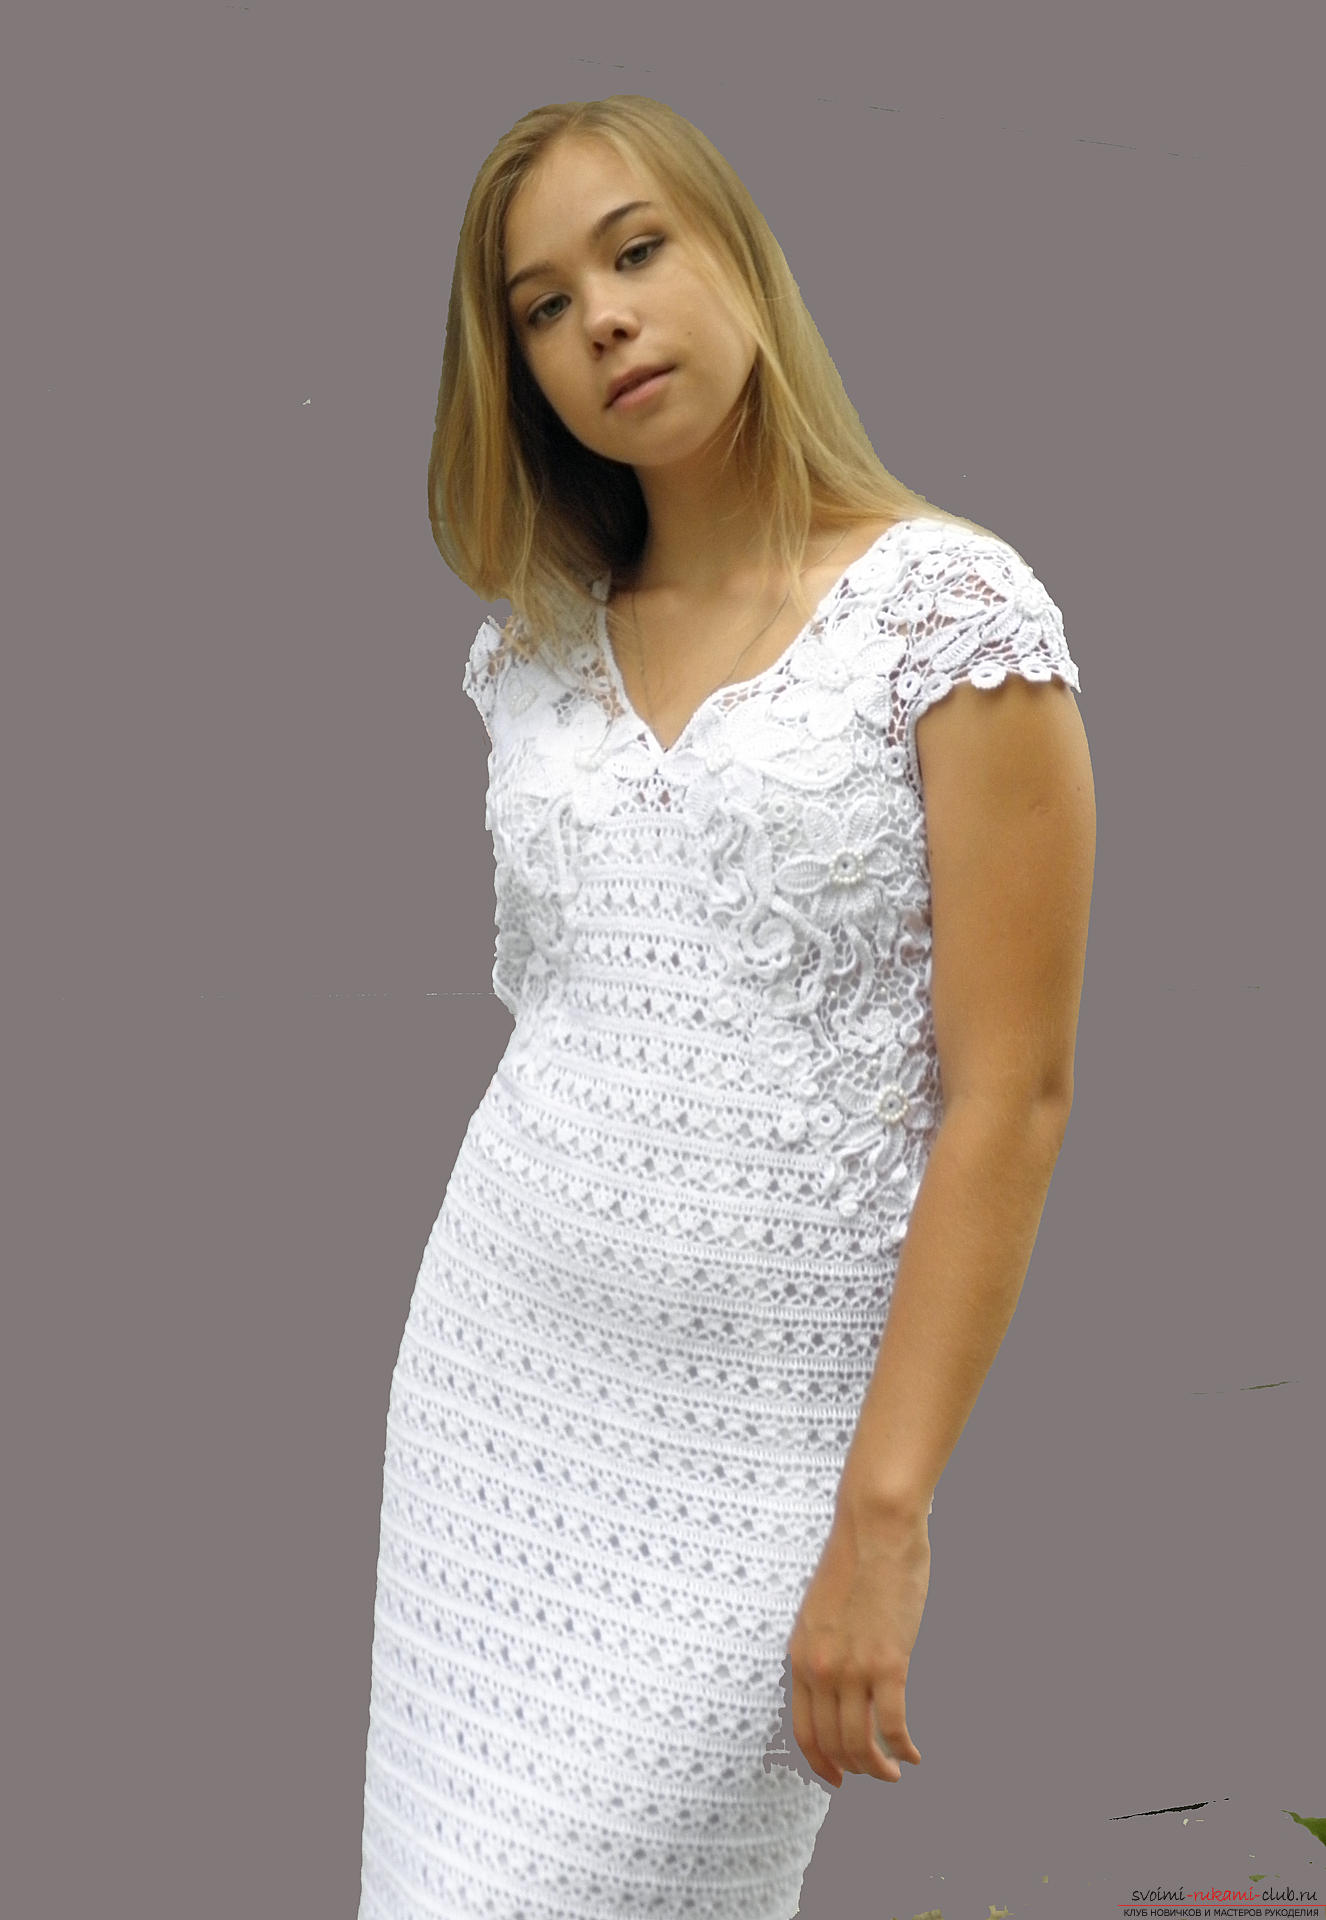 Подробное описание белоснежного платья, связанного крючком в смешанной технике. Фото №3